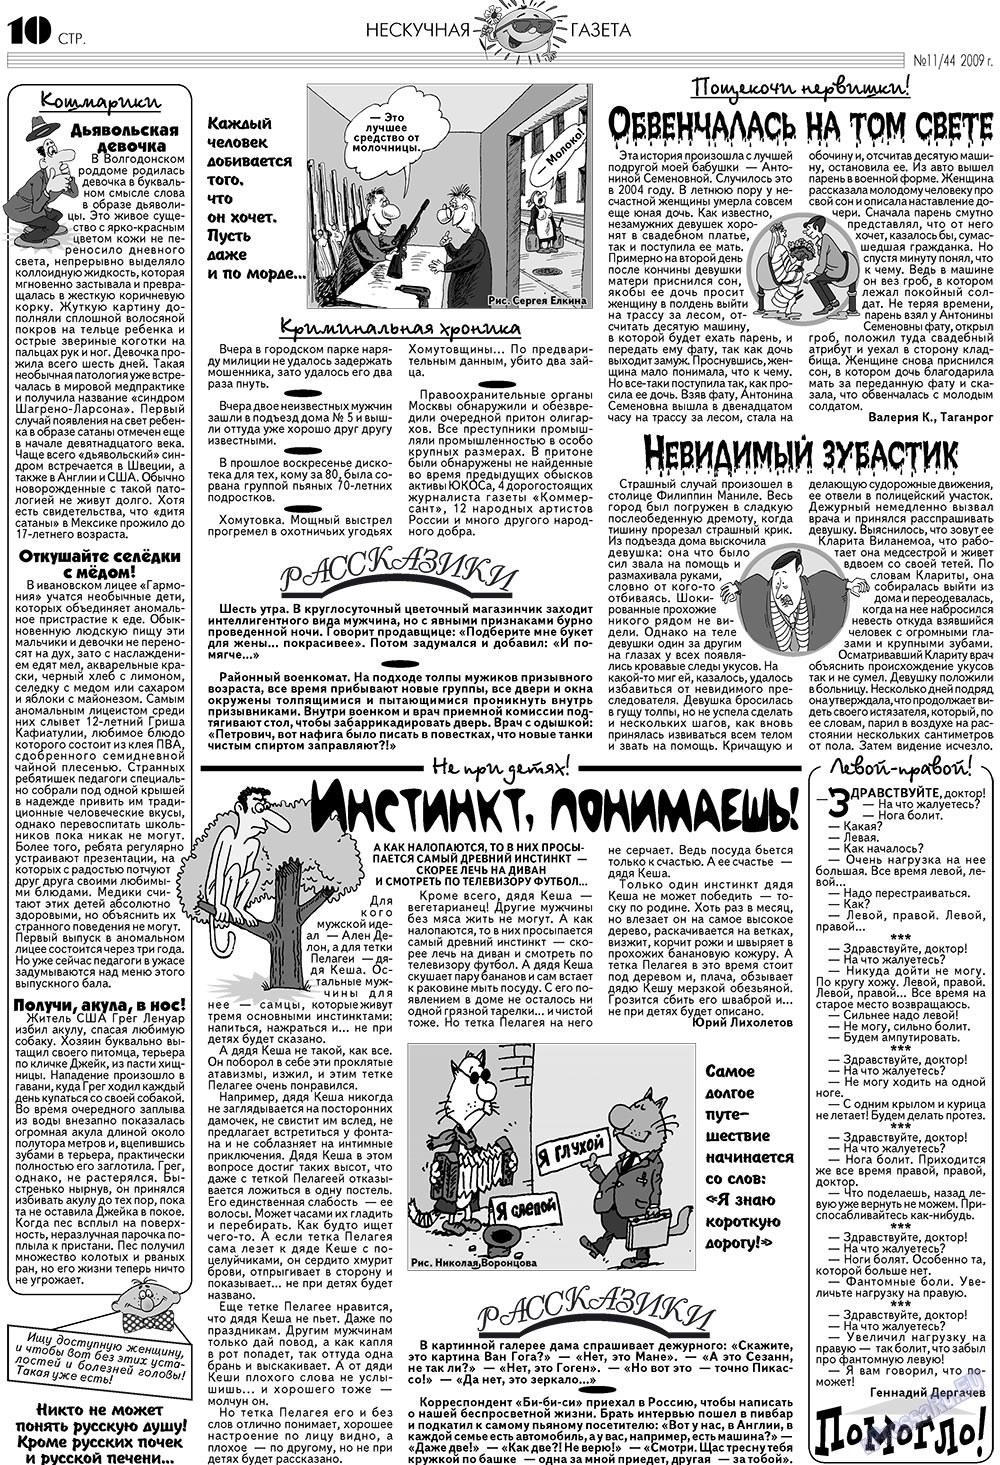 Нескучная газета (журнал). 2009 год, номер 11, стр. 10